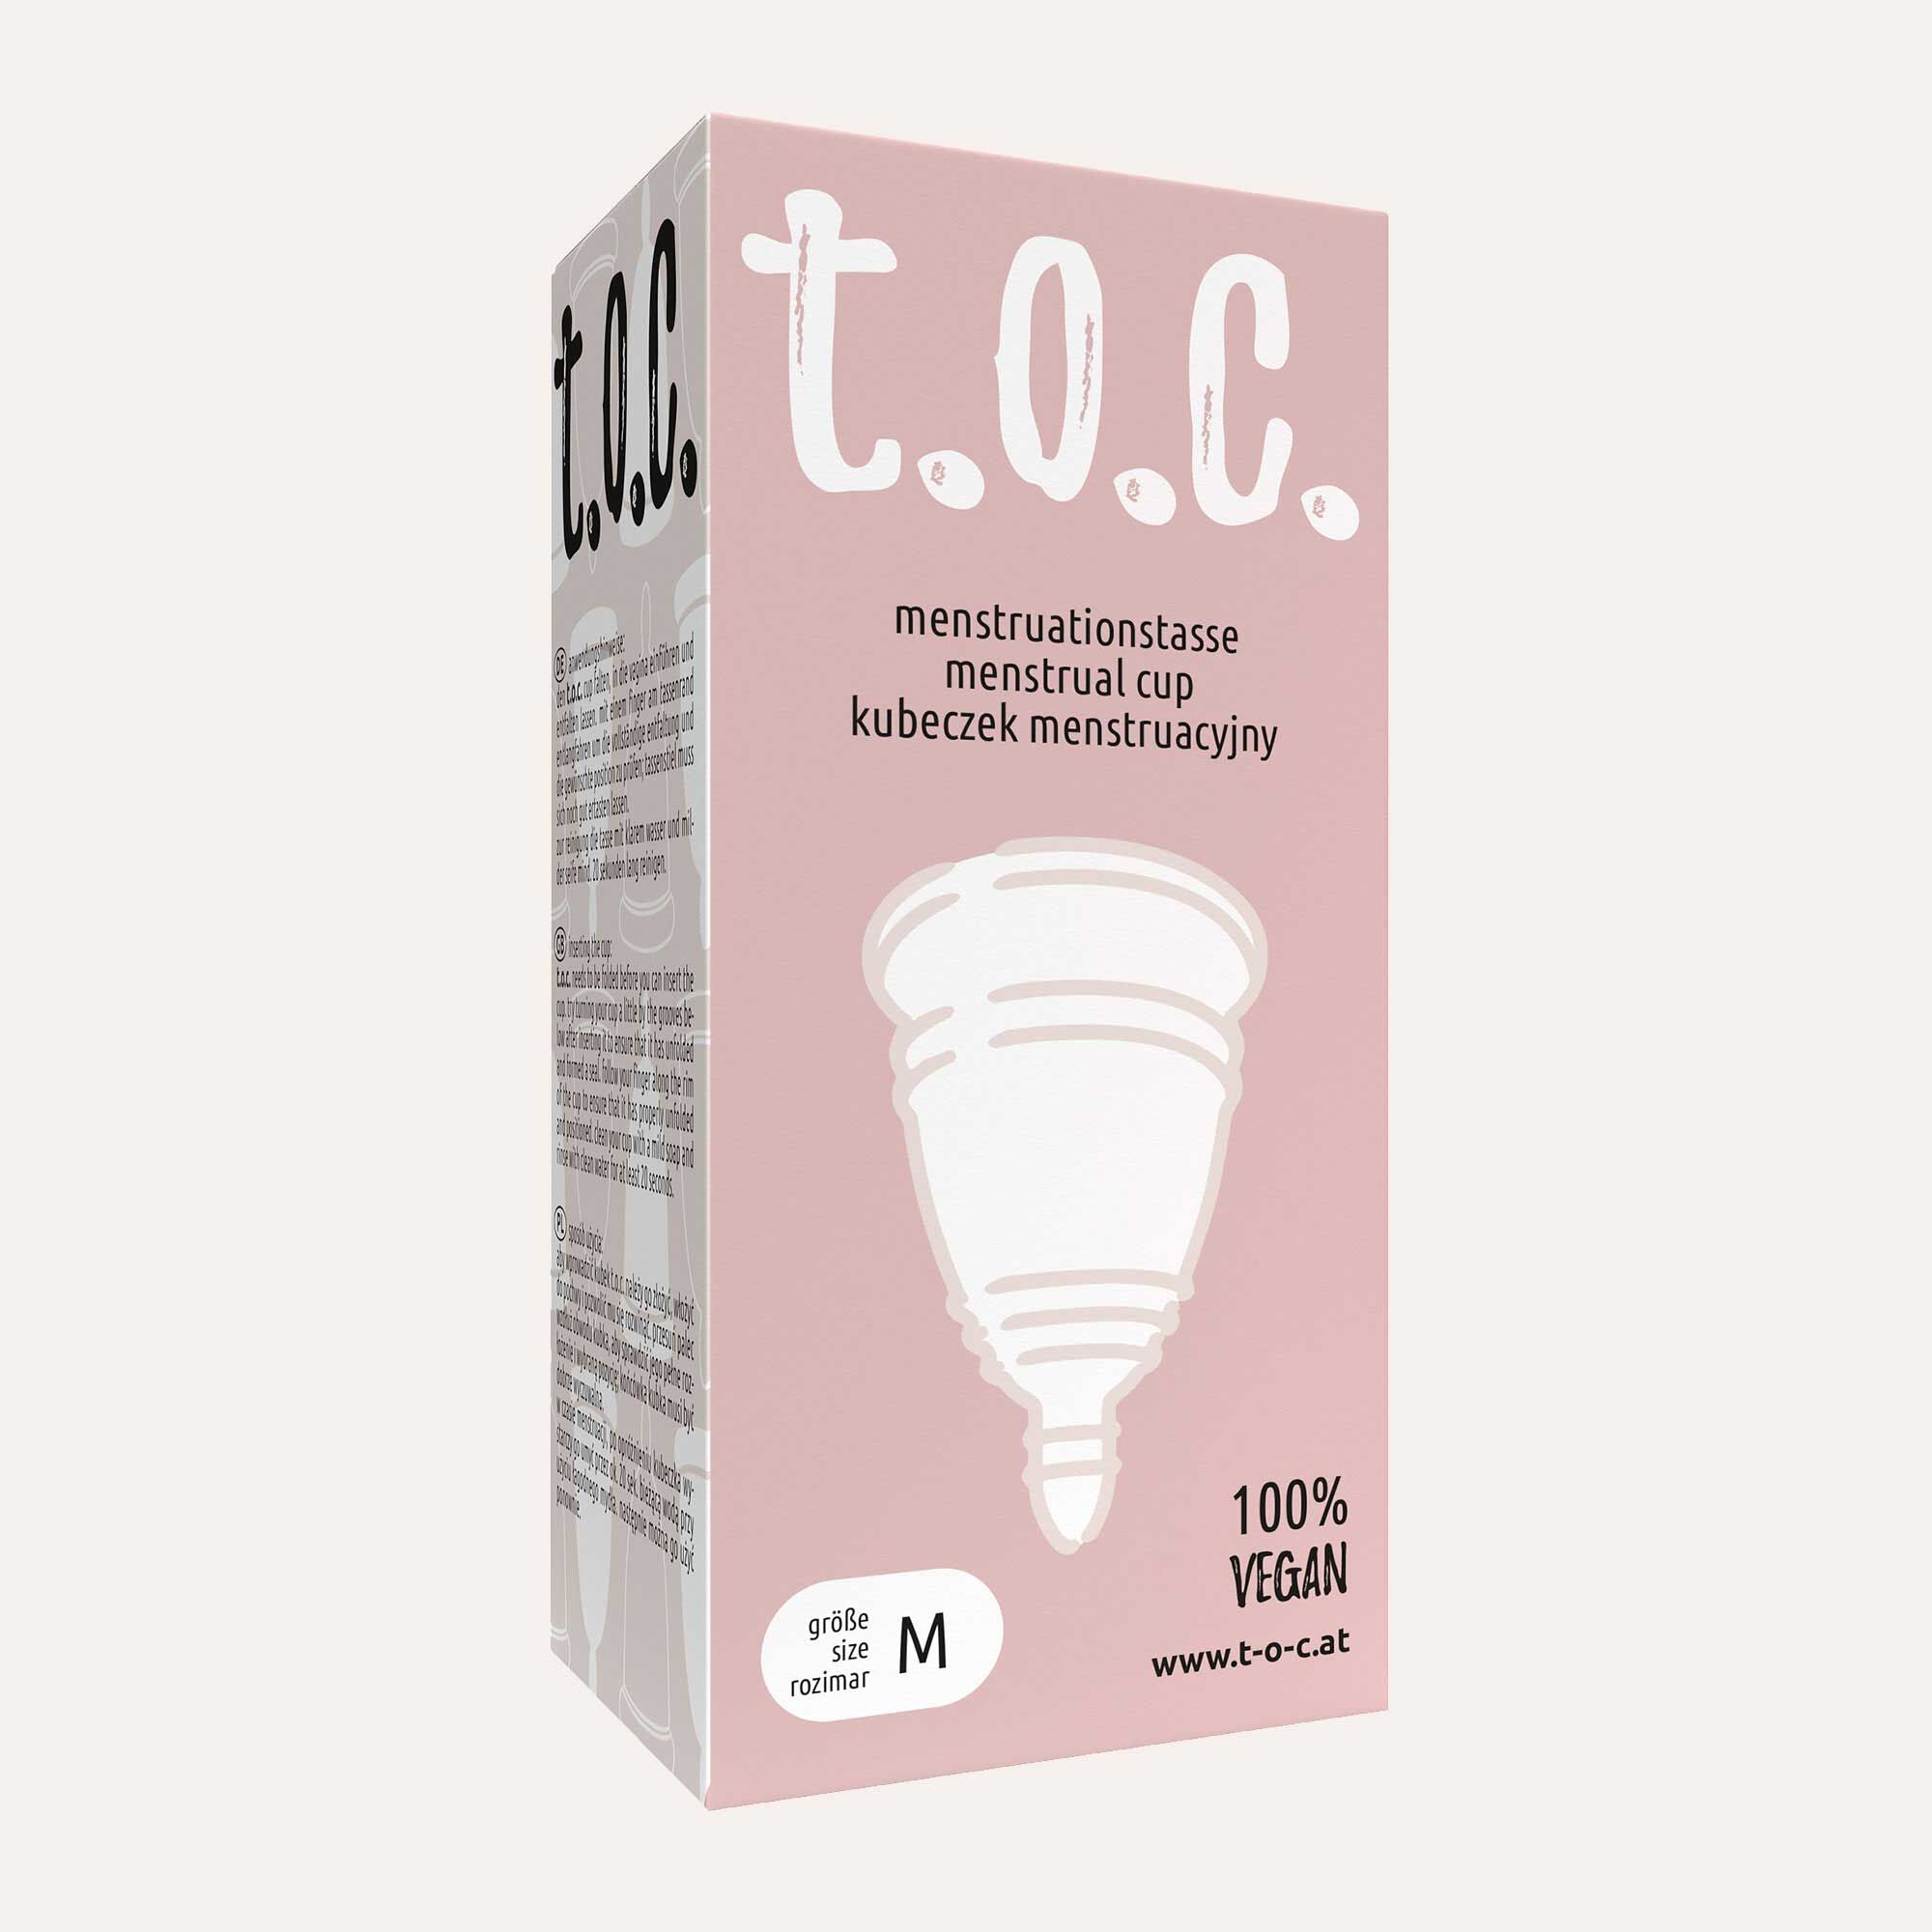 t.o.c. Menstrual cup